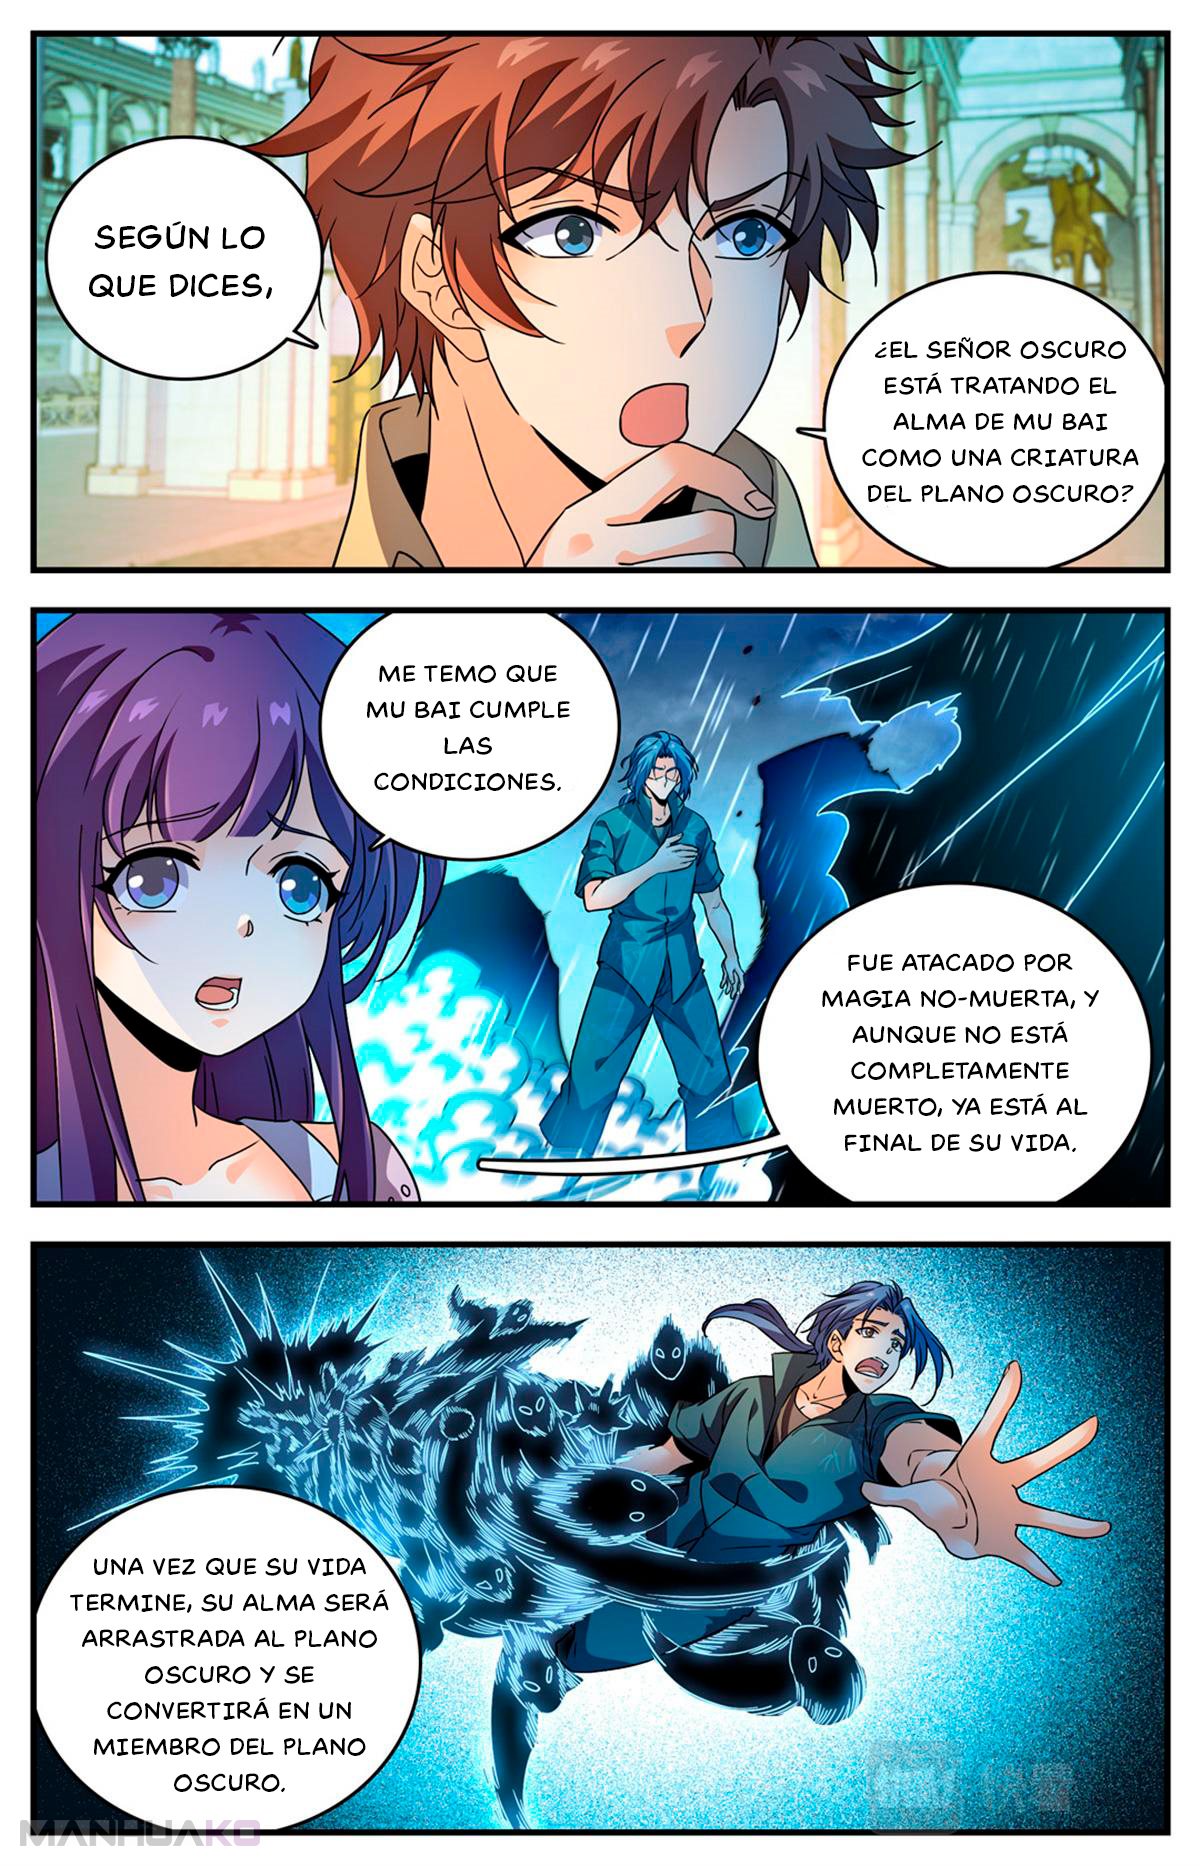 Manga Versatile Mage Chapter 1050 image number 1